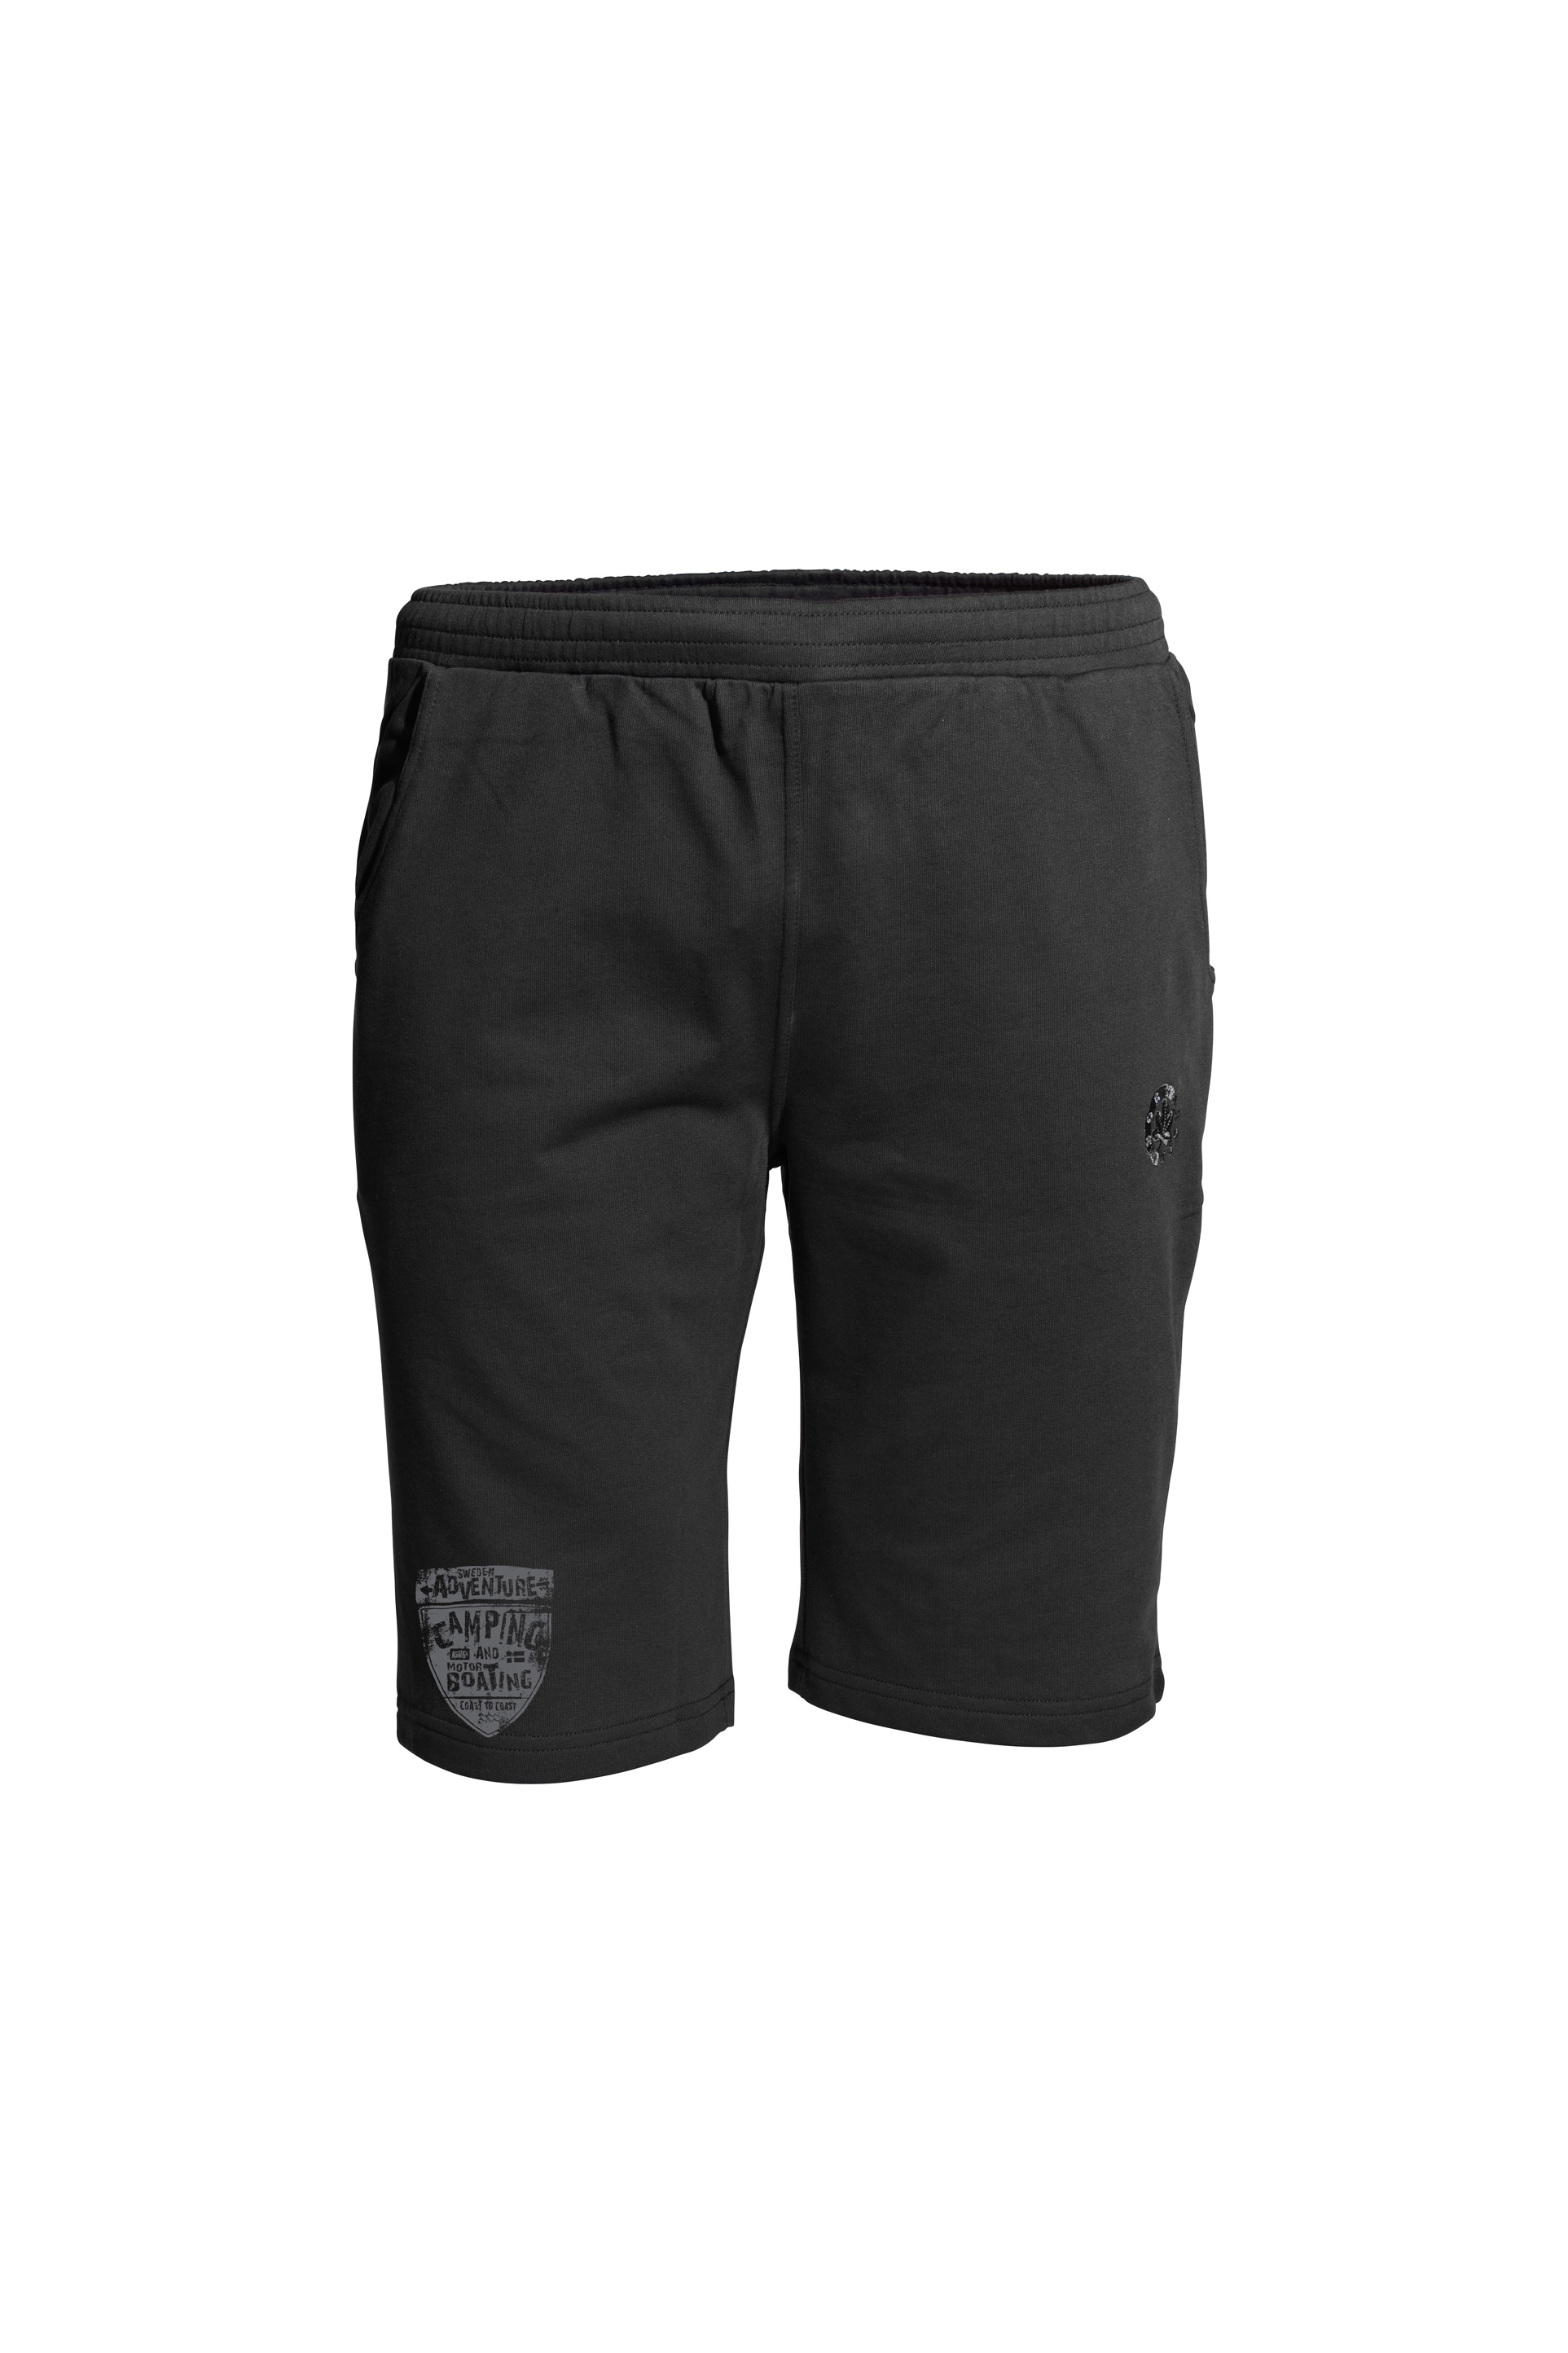 AHORN SPORTSWEAR Shorts »CAMPING«, mit sportlichem Print am Bein